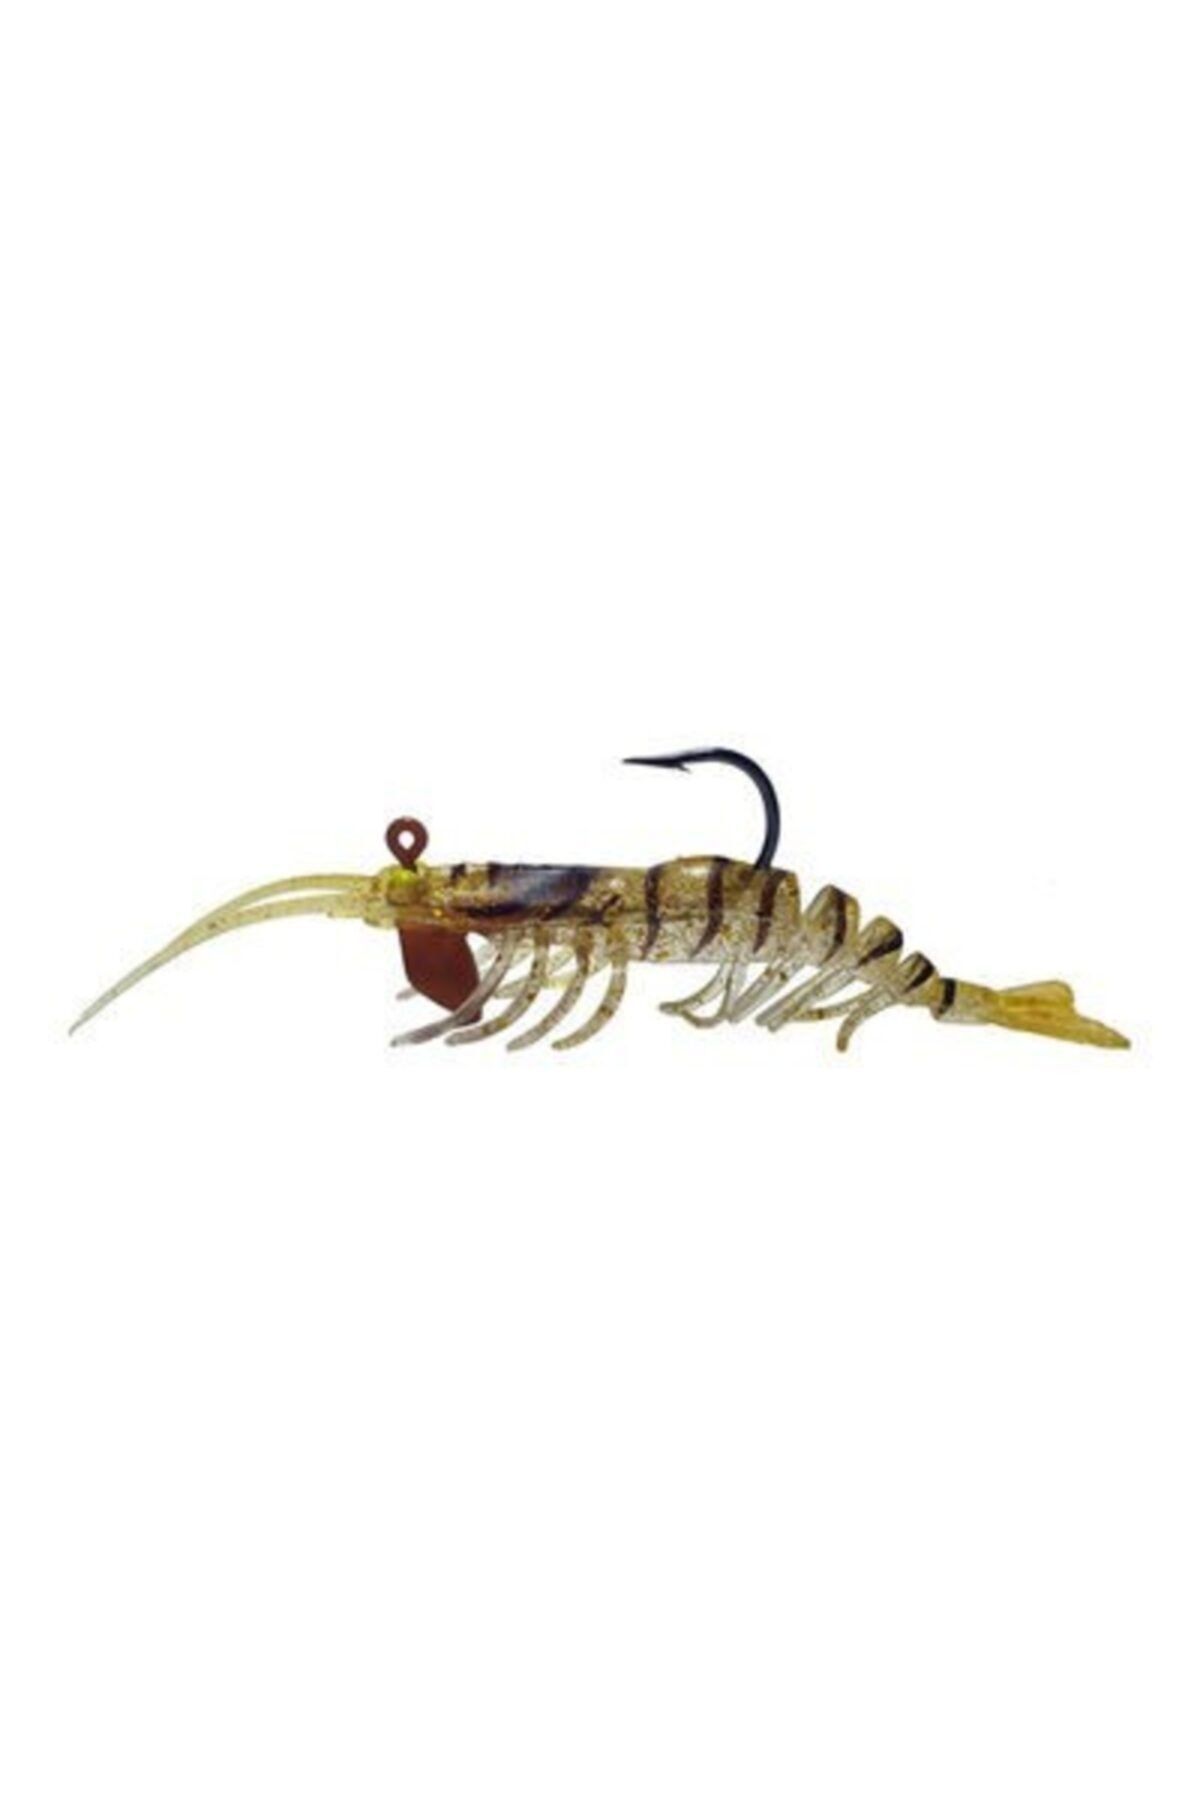 Osaka Caridina Shrimp 7.62cm 6.5gr Silikon Karides C027